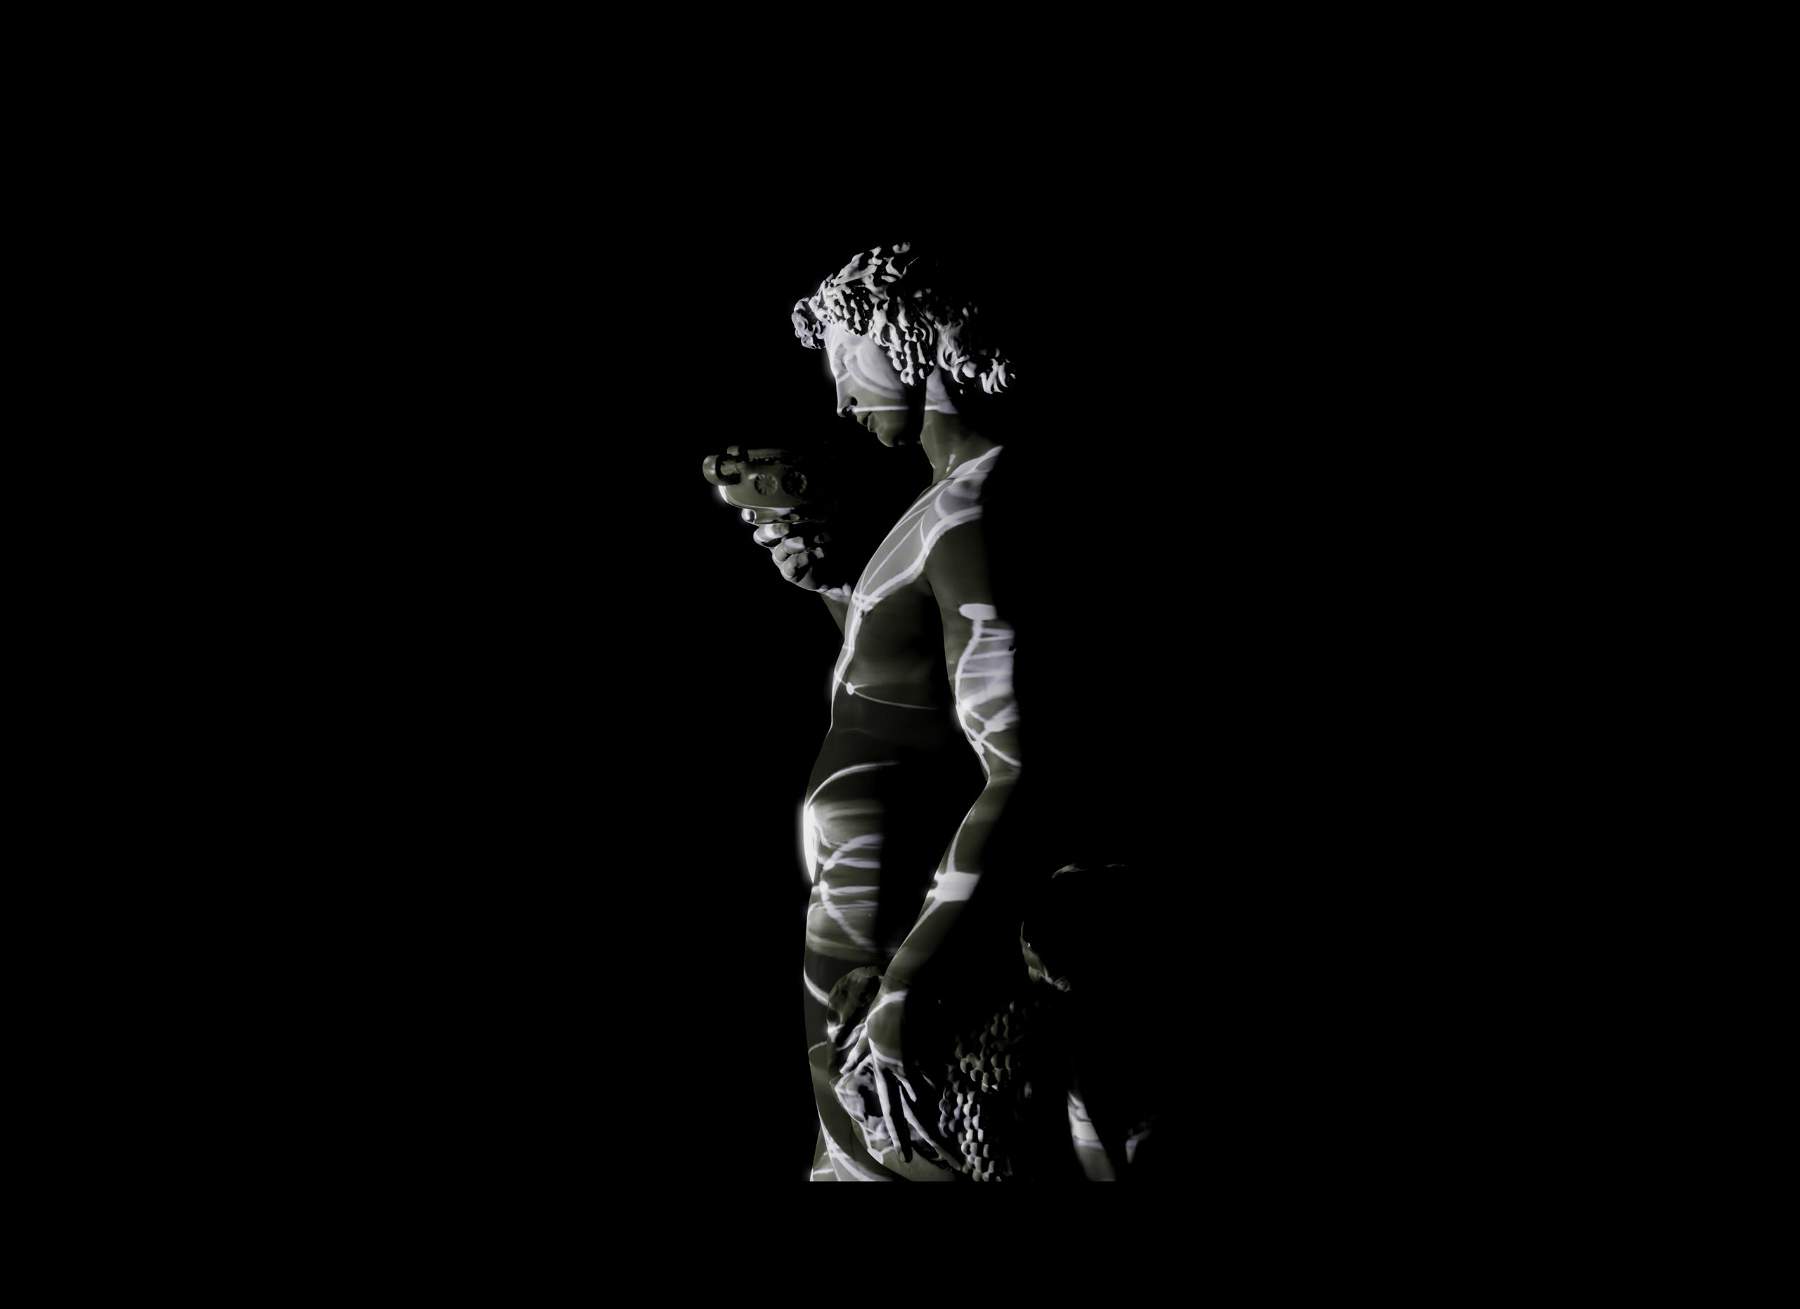 Michelangelo stars in immersive video installation in Pietrasanta